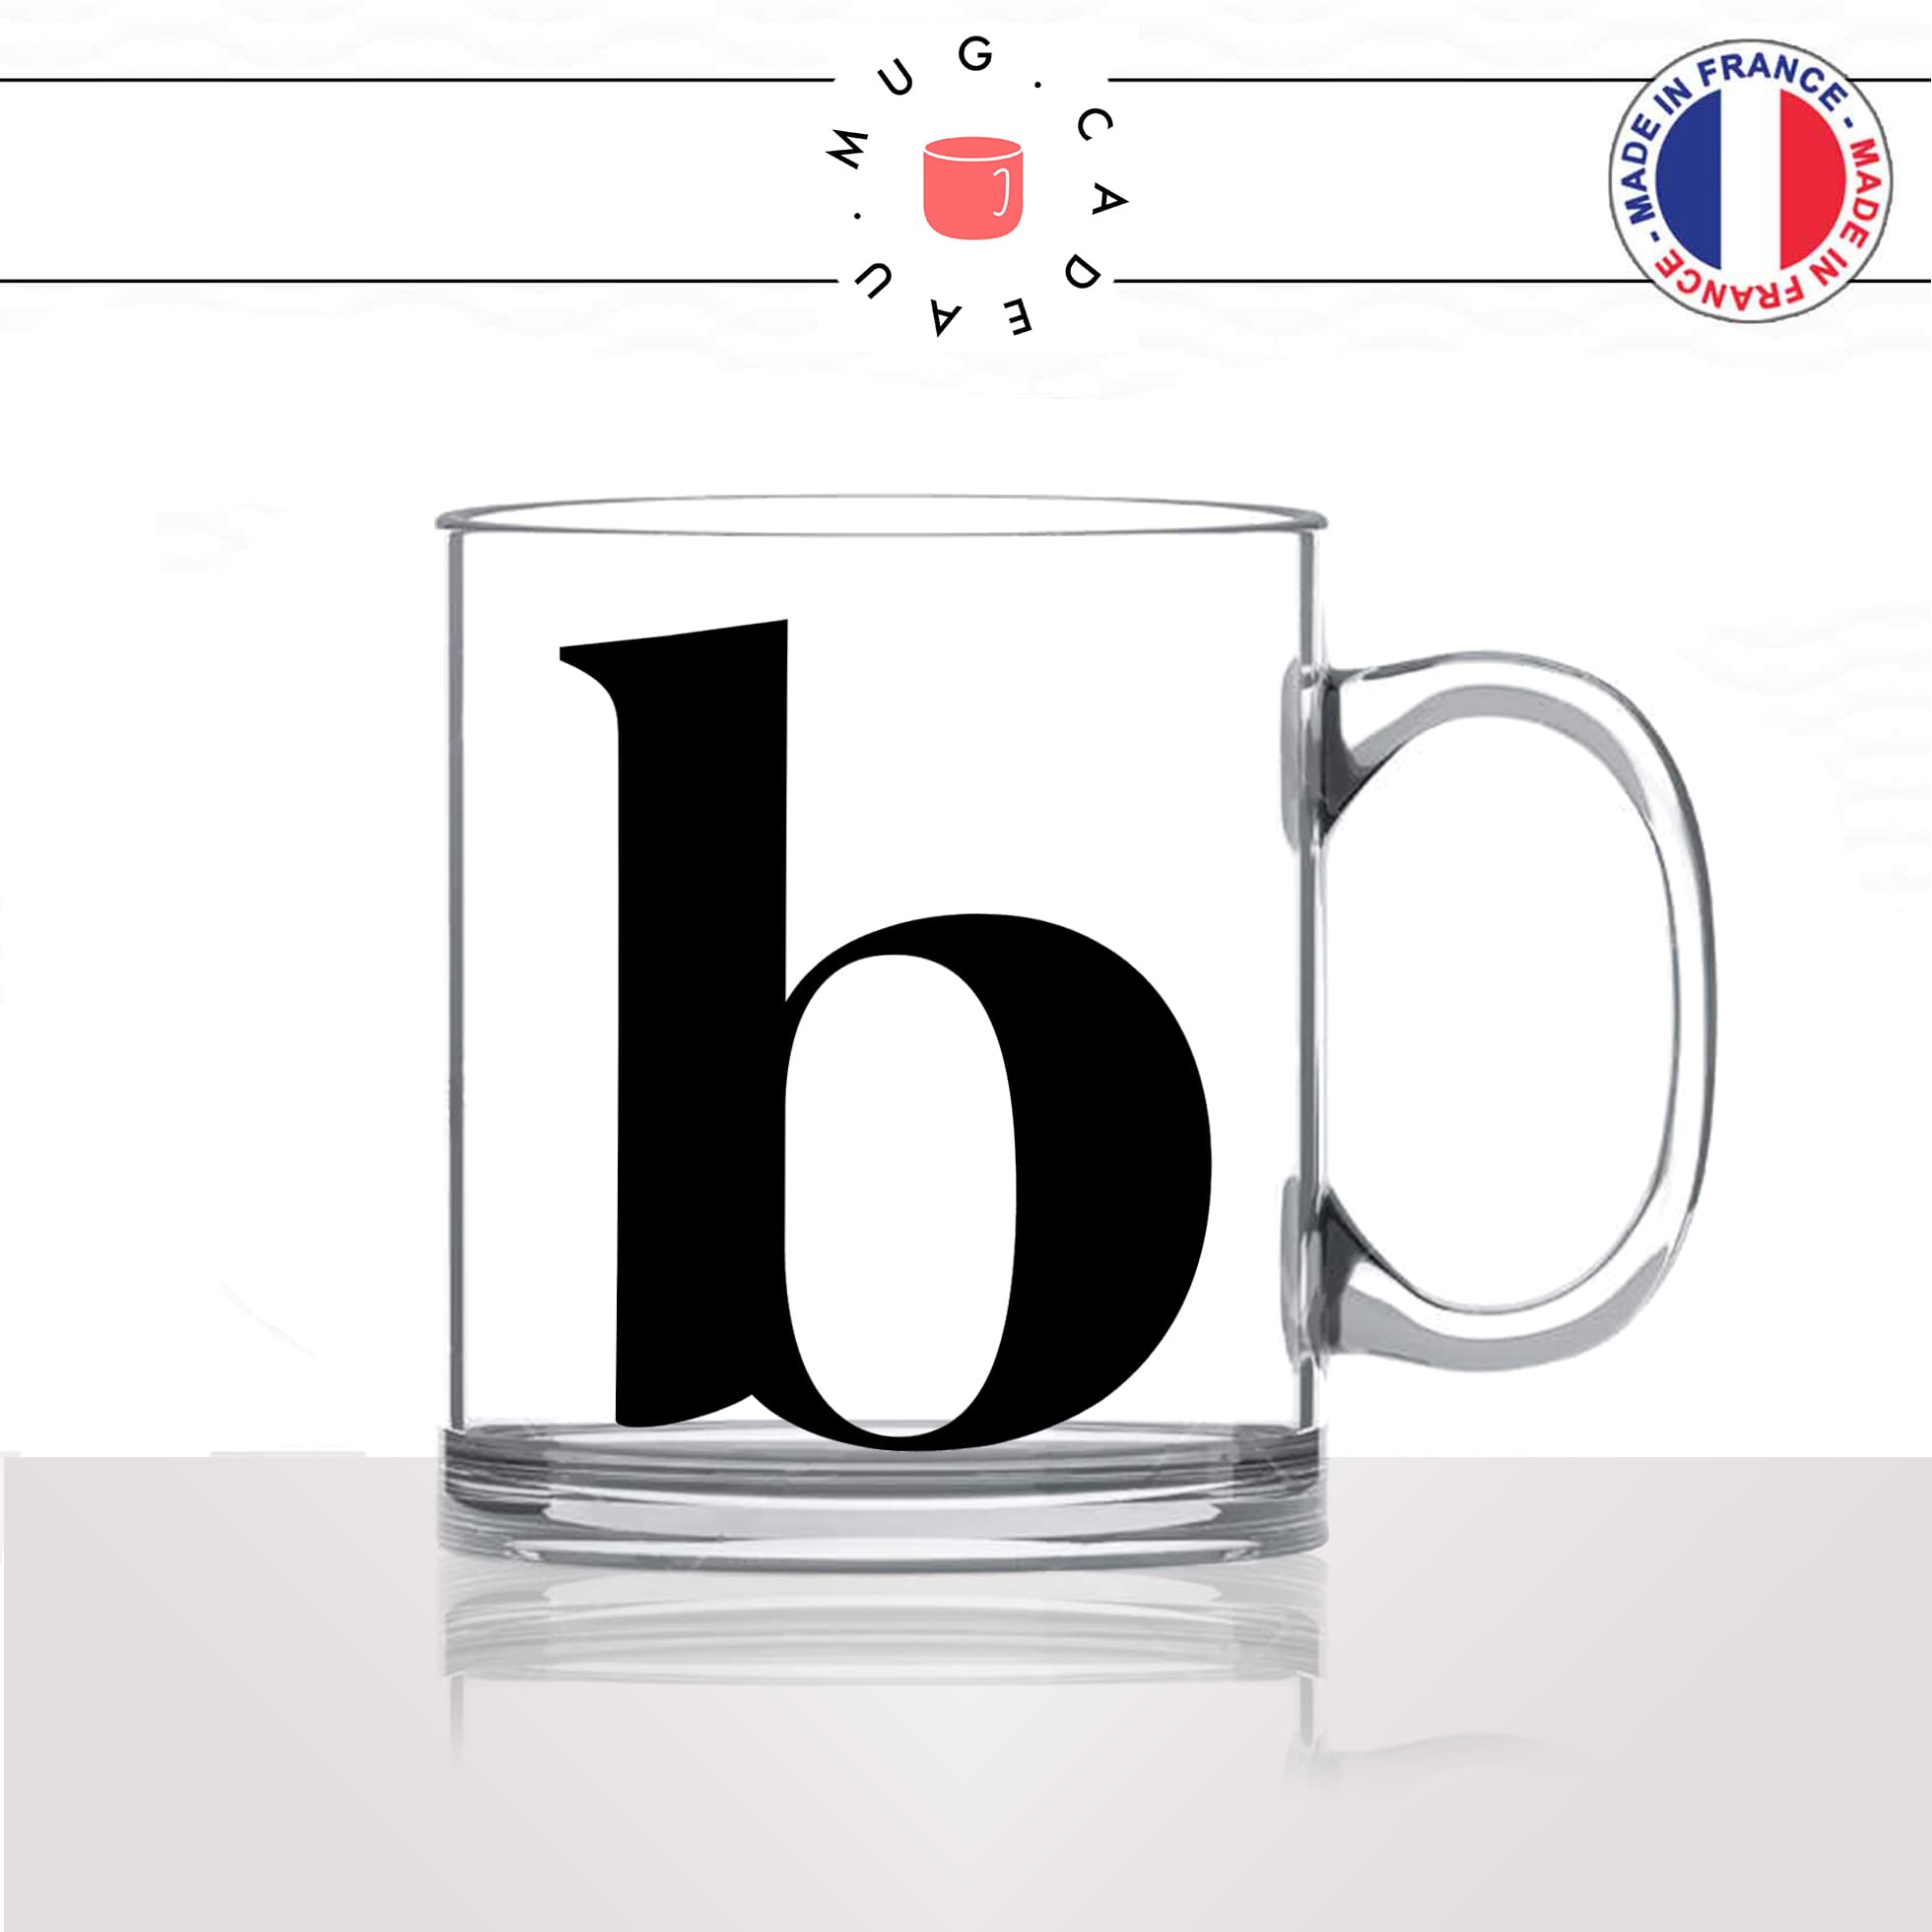 mug-tasse-en-verre-transparent-glass-initiale-B-brigitte-beatrice-bonnie-belle-majuscule-lettre-collegue-original-idée-cadeau-fun-cool-café-thé2